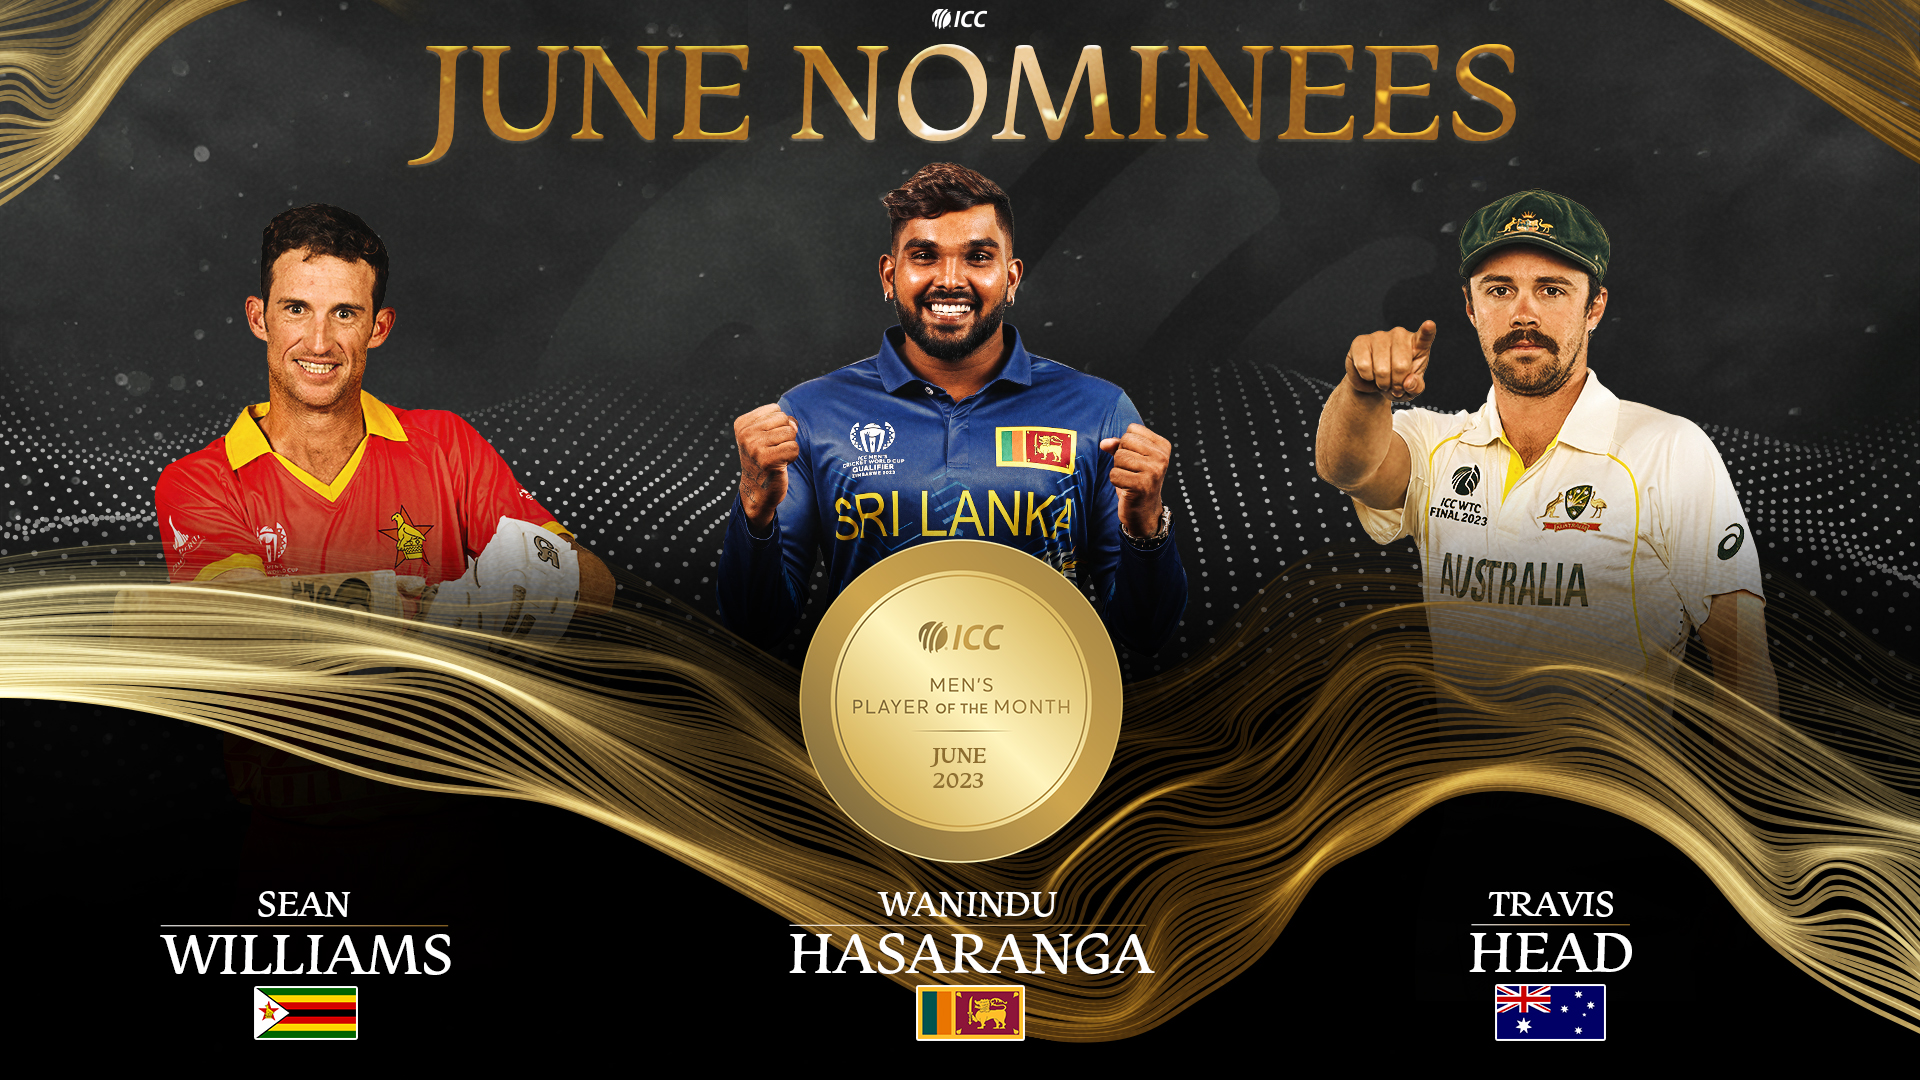 වනිඳුත් ජුනි මාසයේ දක්ෂතම ක්‍රීඩකයා තේරීමේ නම් අතරට- Wanidu named in ICC Men’s Player of the Month nominees for June